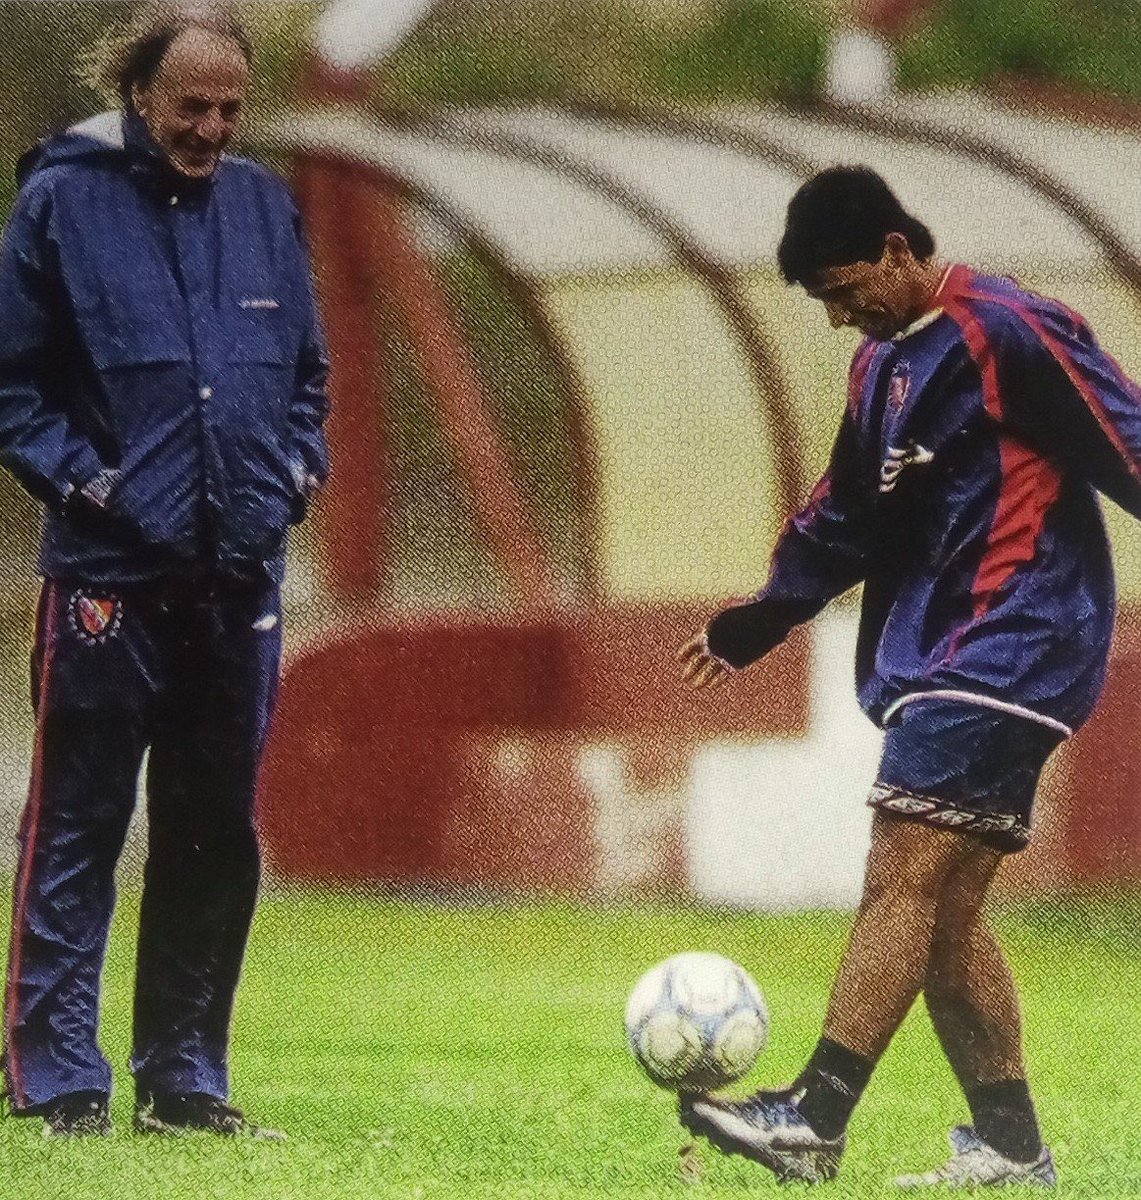 Fue uno de mis primeros técnicos y el que más me marcó. Gracias por todo lo que enseñaste y lo que le diste al fútbol argentino y mundial. Tu legado es inmenso. Hasta siempre, Flaco 🙏🏽